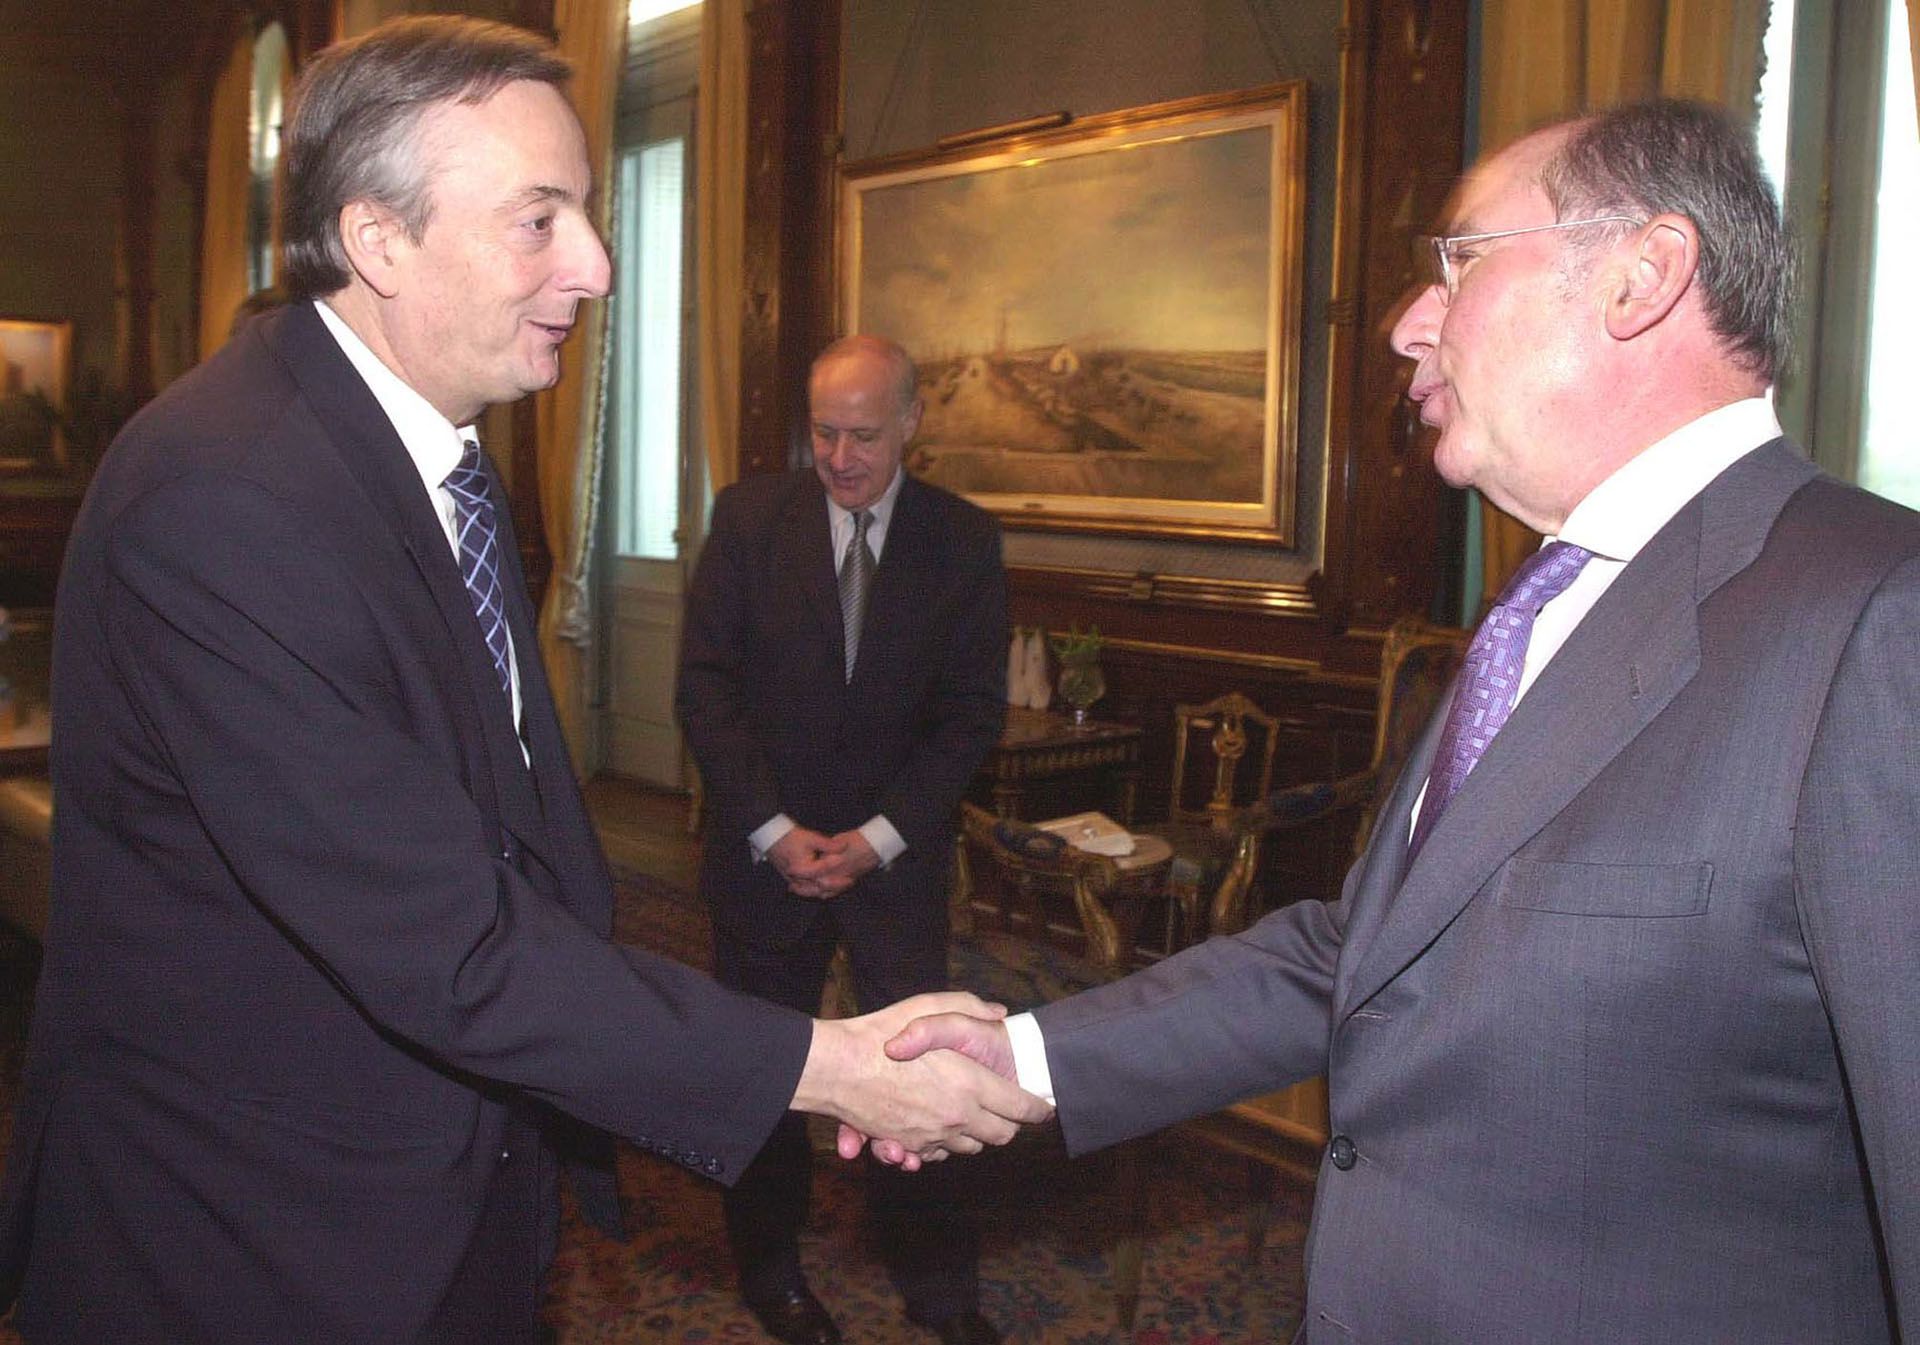 Kirchner estrecha la mano de Rodrigo Rato, director del FMI, cuando todavía aceptaba el envío de misiones de revisión del organismo